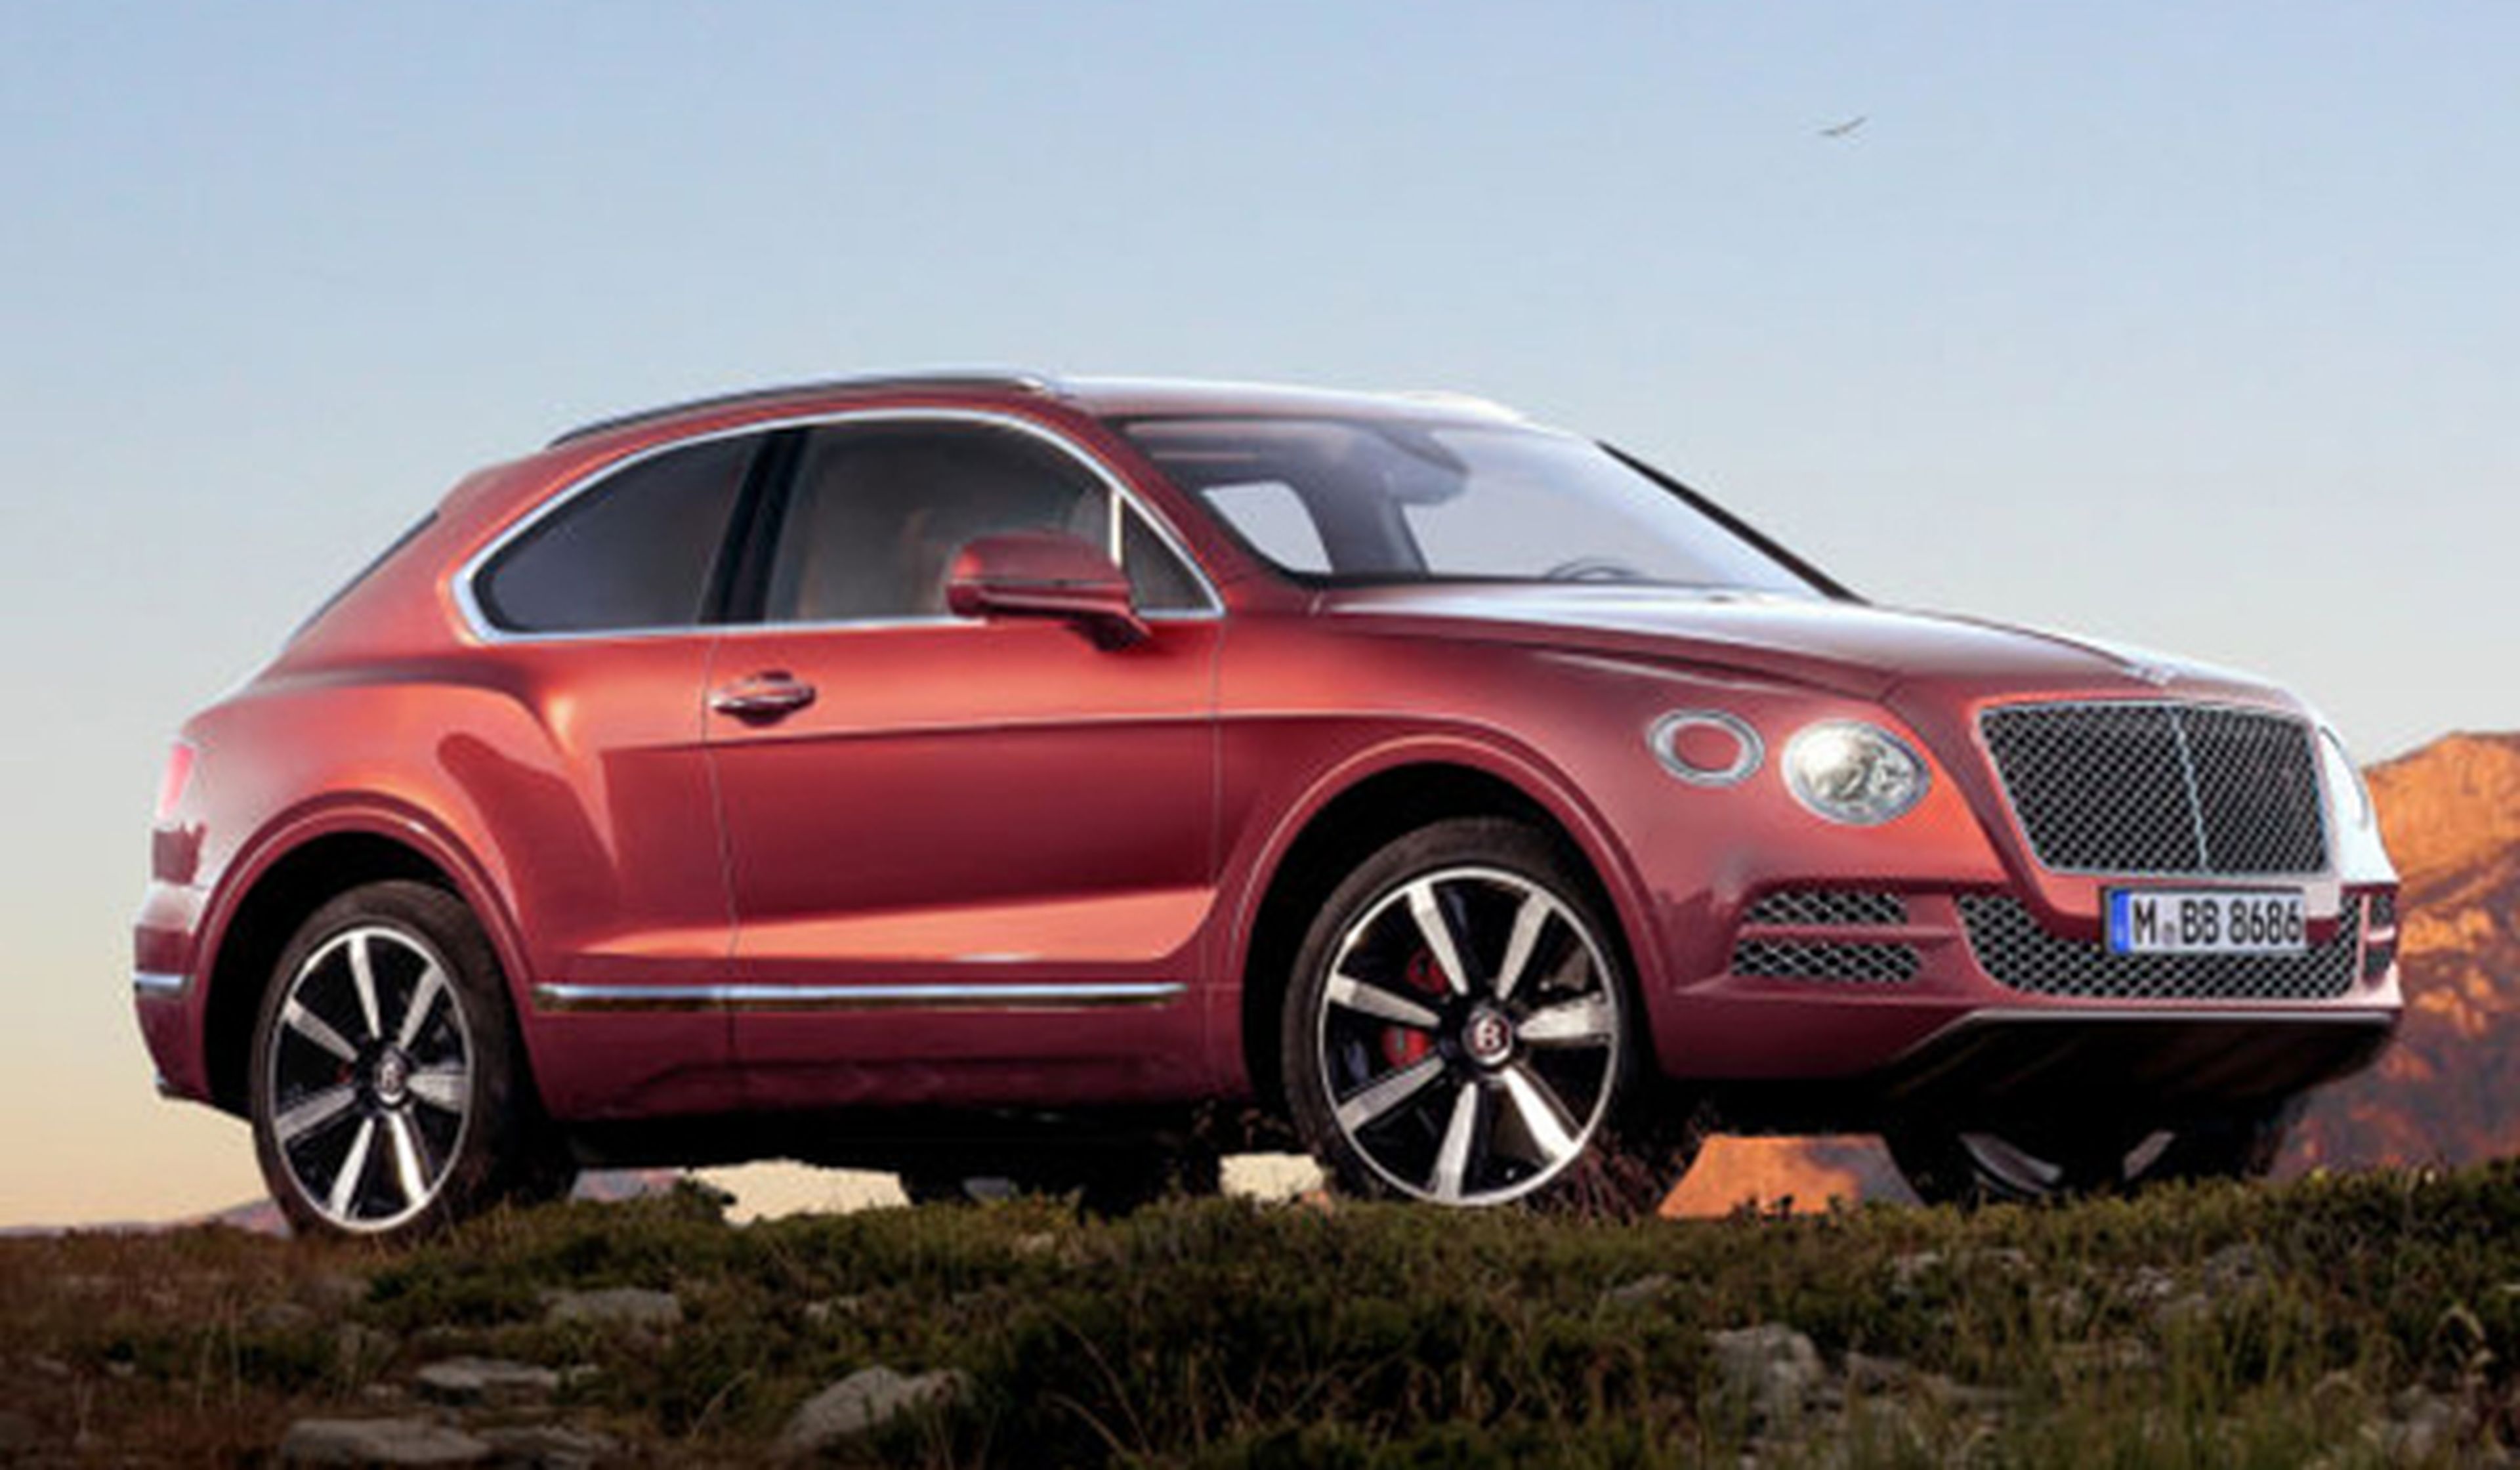 Llega el Bentley Bermuda: SUV, coupé y biplaza